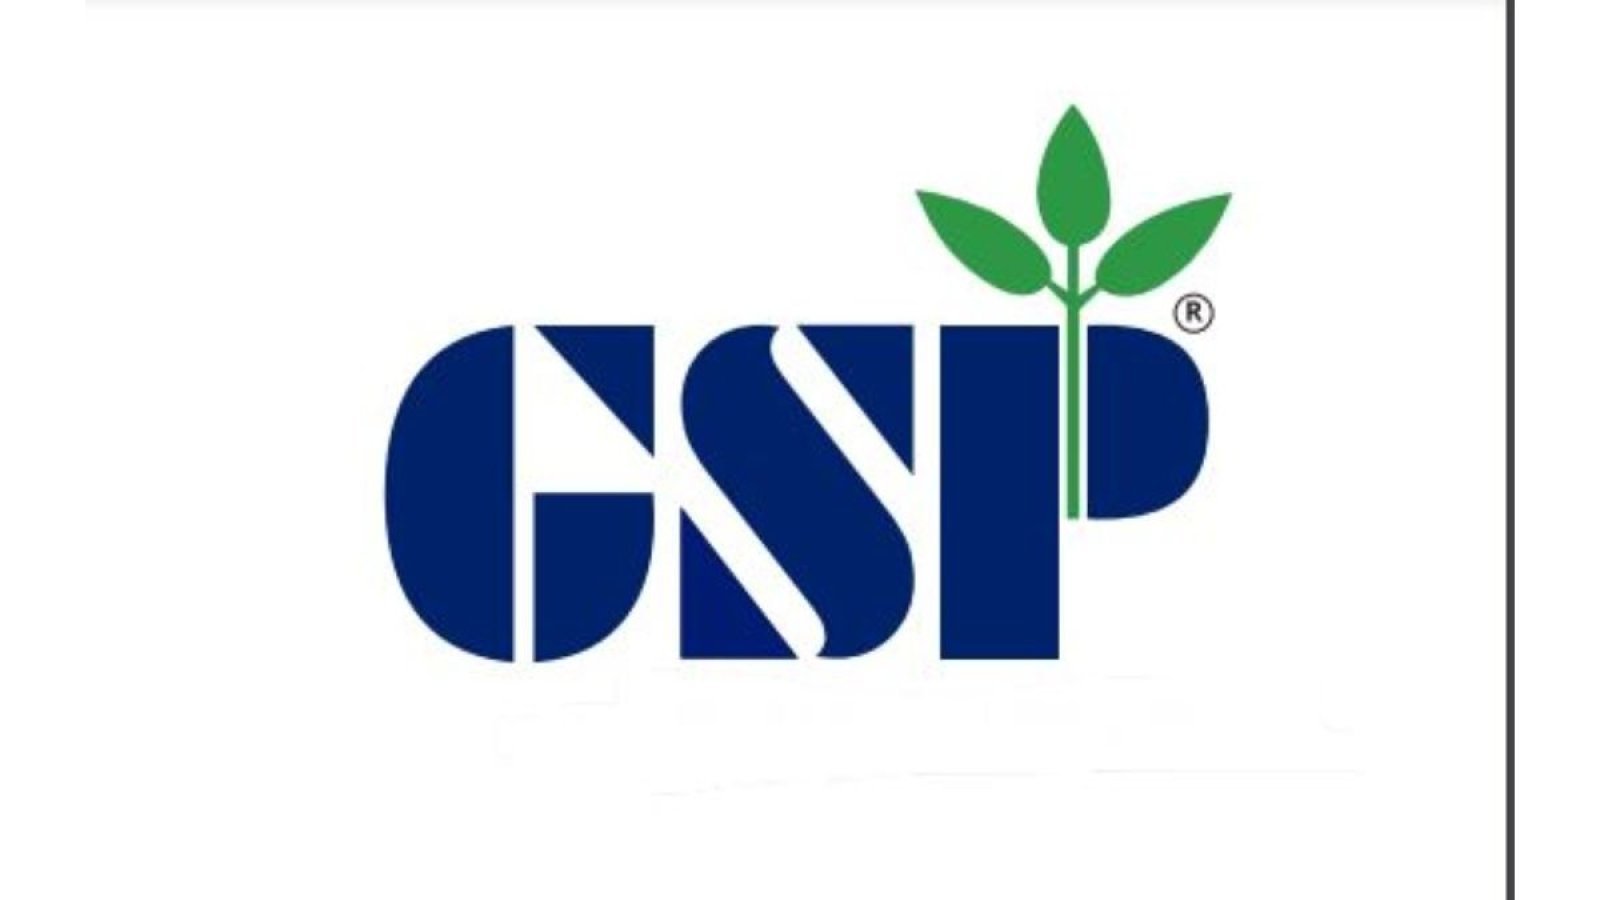 जीएसपी क्रॉप साइंस घरेलू और विदेशी विस्तार के माध्यम से आमदनी में बढ़ोतरी करेगा